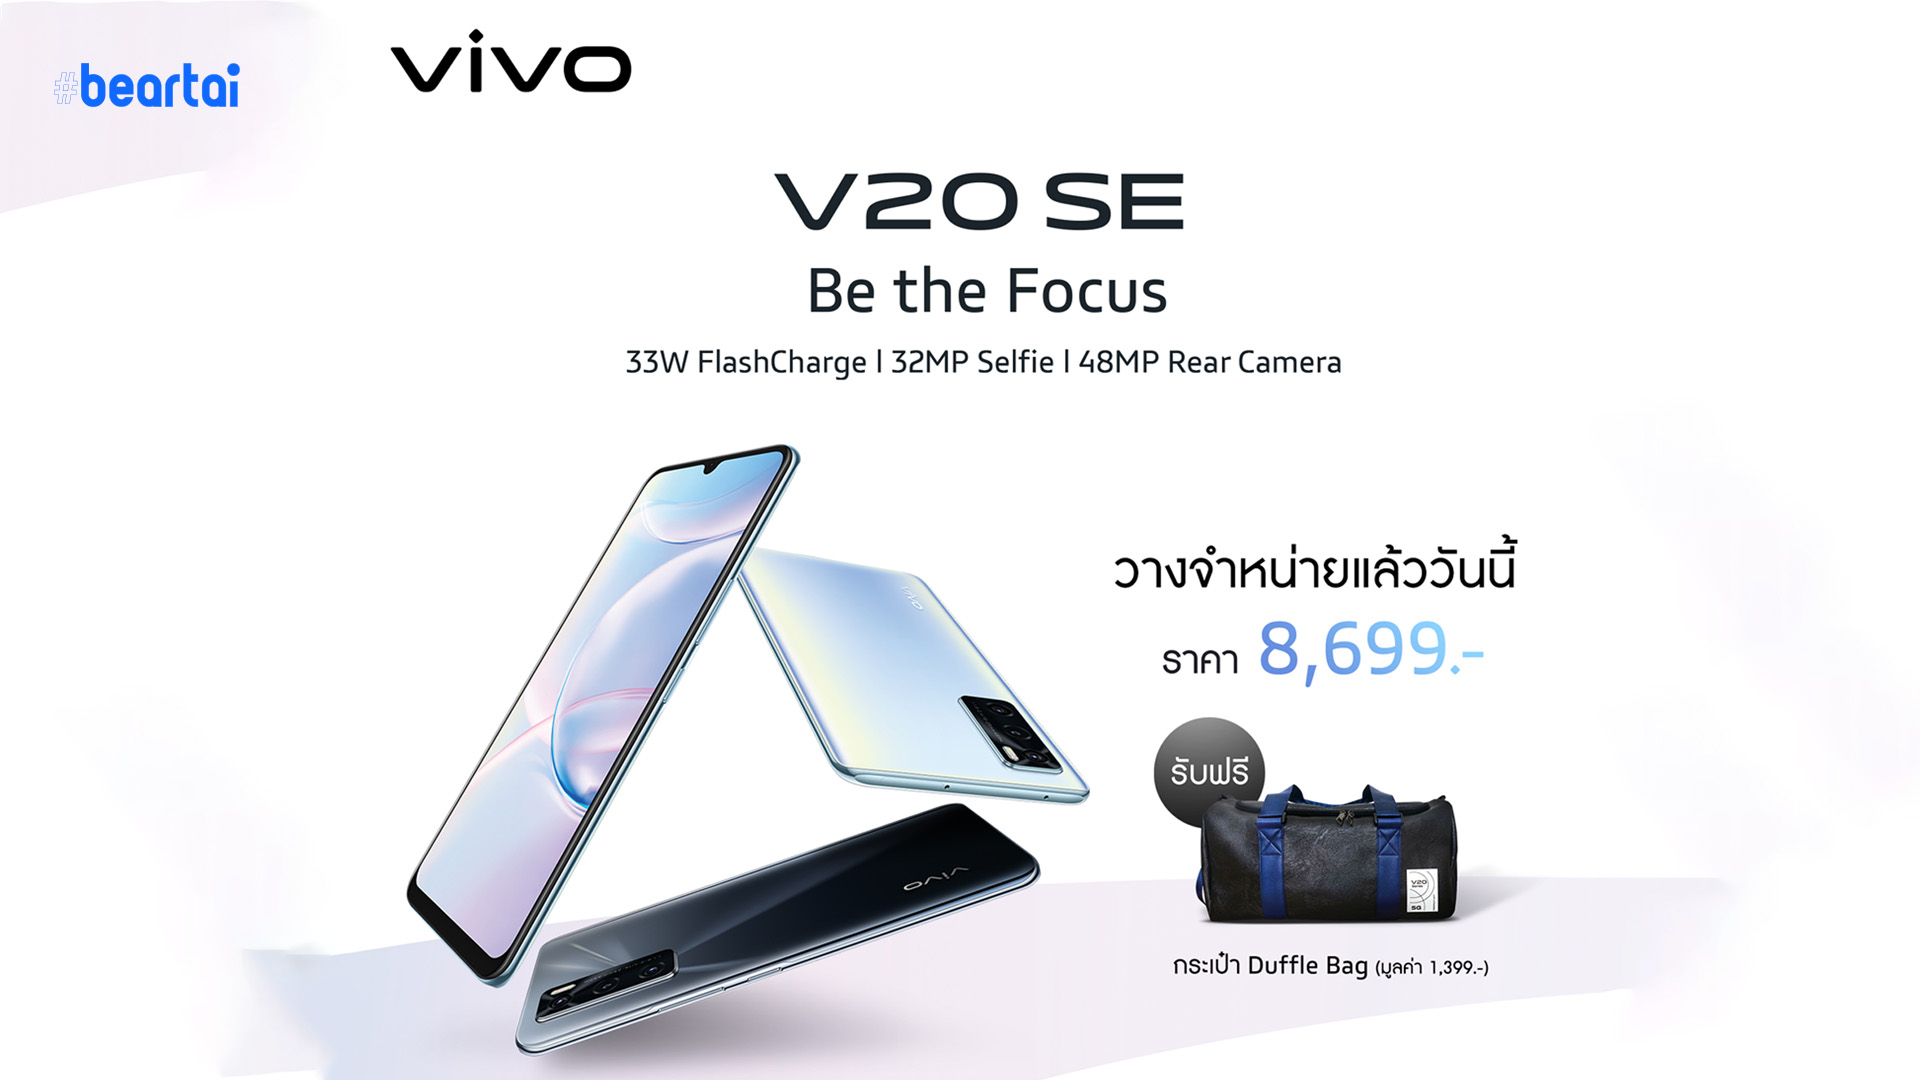 สเปกถูกตา ราคาถูกใจ! Vivo V20 SE วางจำหน่ายทั่วประเทศ 14 พฤศจิกายนนี้ ที่ราคา 8,699 บาท